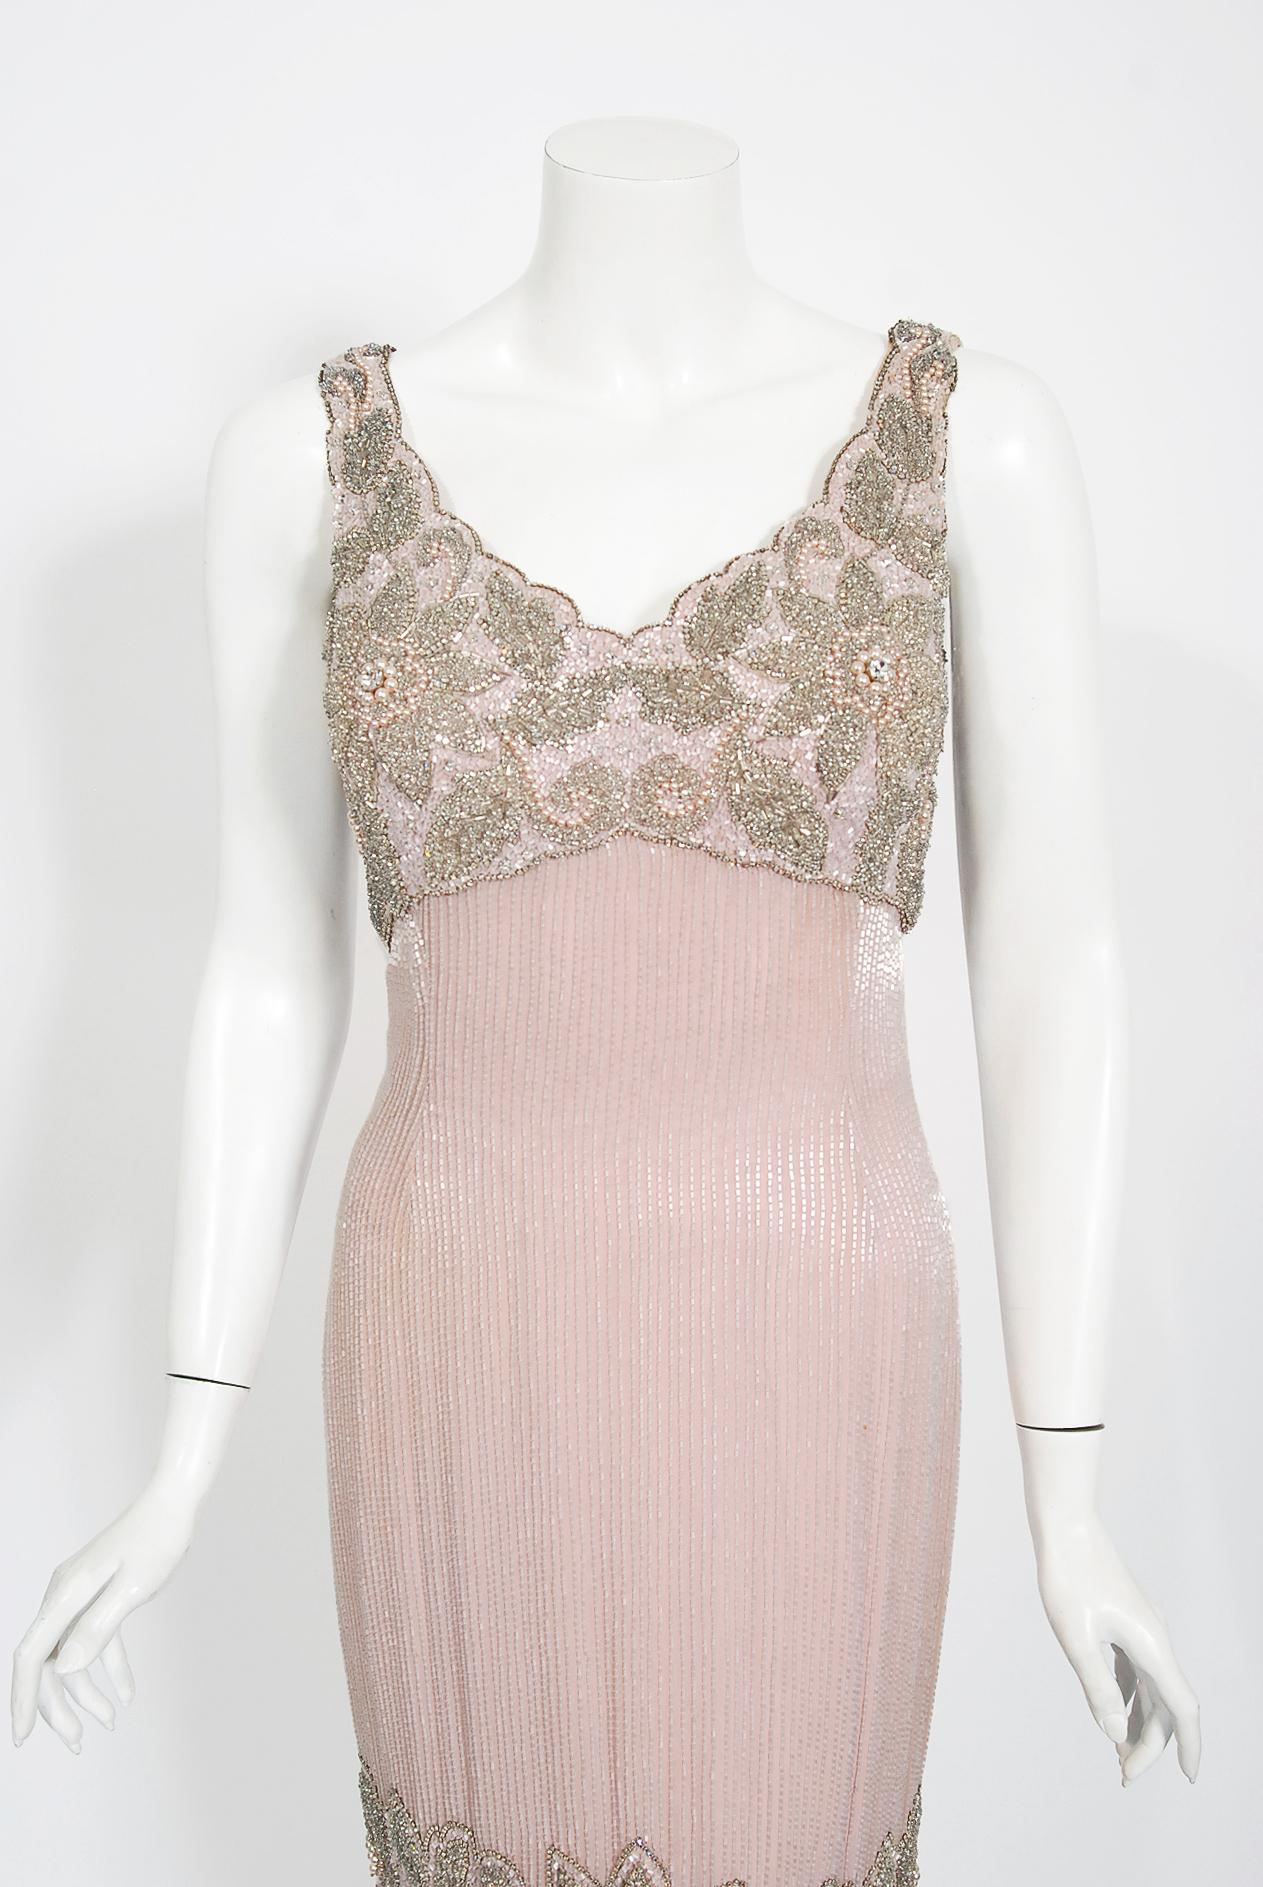 Atemberaubend und unglaublich selten Helen Rose Designer Couture blush-pink Perlen Cocktail-Kleid aus den frühen 1960er Jahren Old Hollywood-Ära. Helen Rose wurde zweimal mit dem Oscar für das beste Kostümdesign ausgezeichnet: 1952 für 